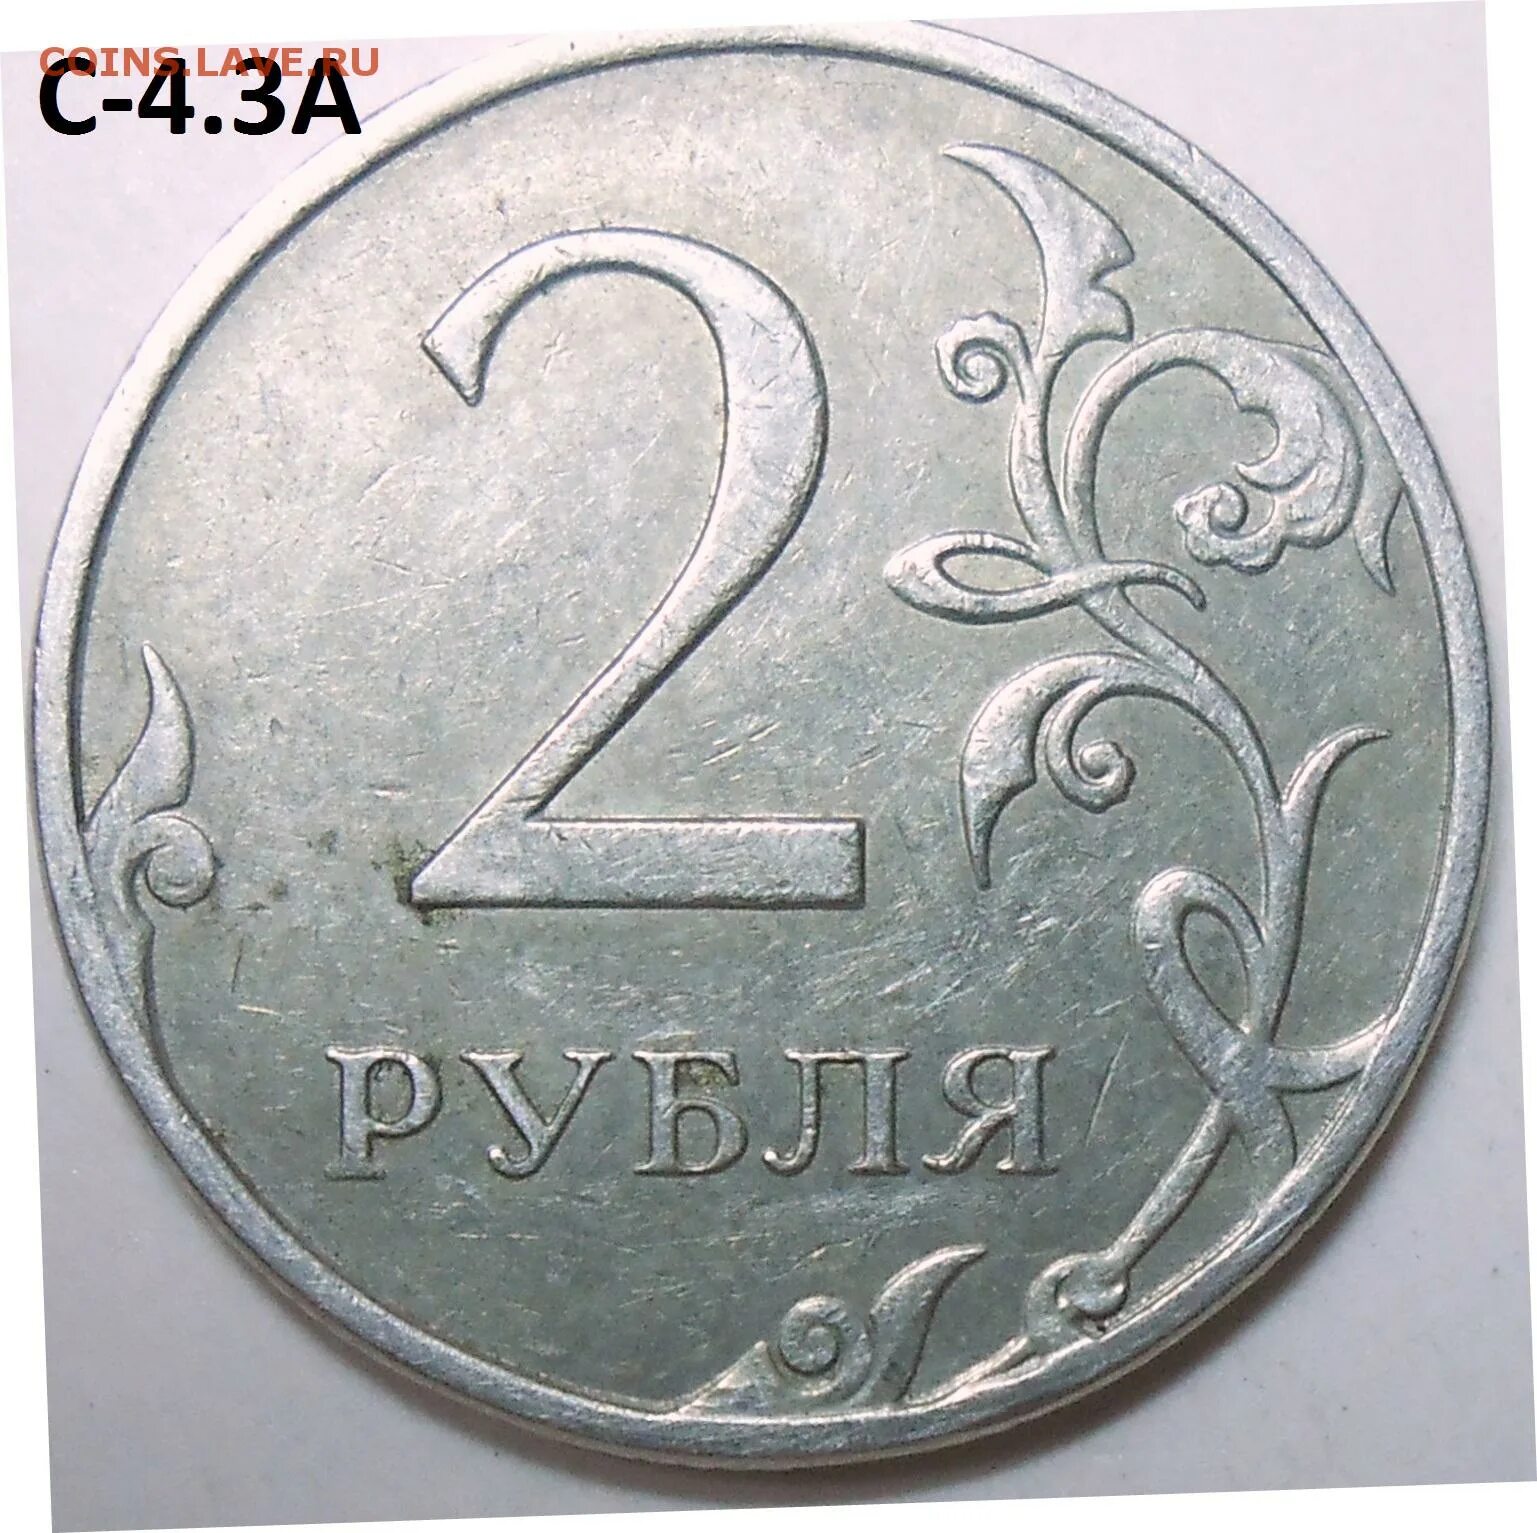 22 апр 14. 2 Рубля 1997 ММД. 2 Руб 1997 ММД. 2 Рубля 1997 СПДМ золото. Редкий ли 2 рубль 1997.